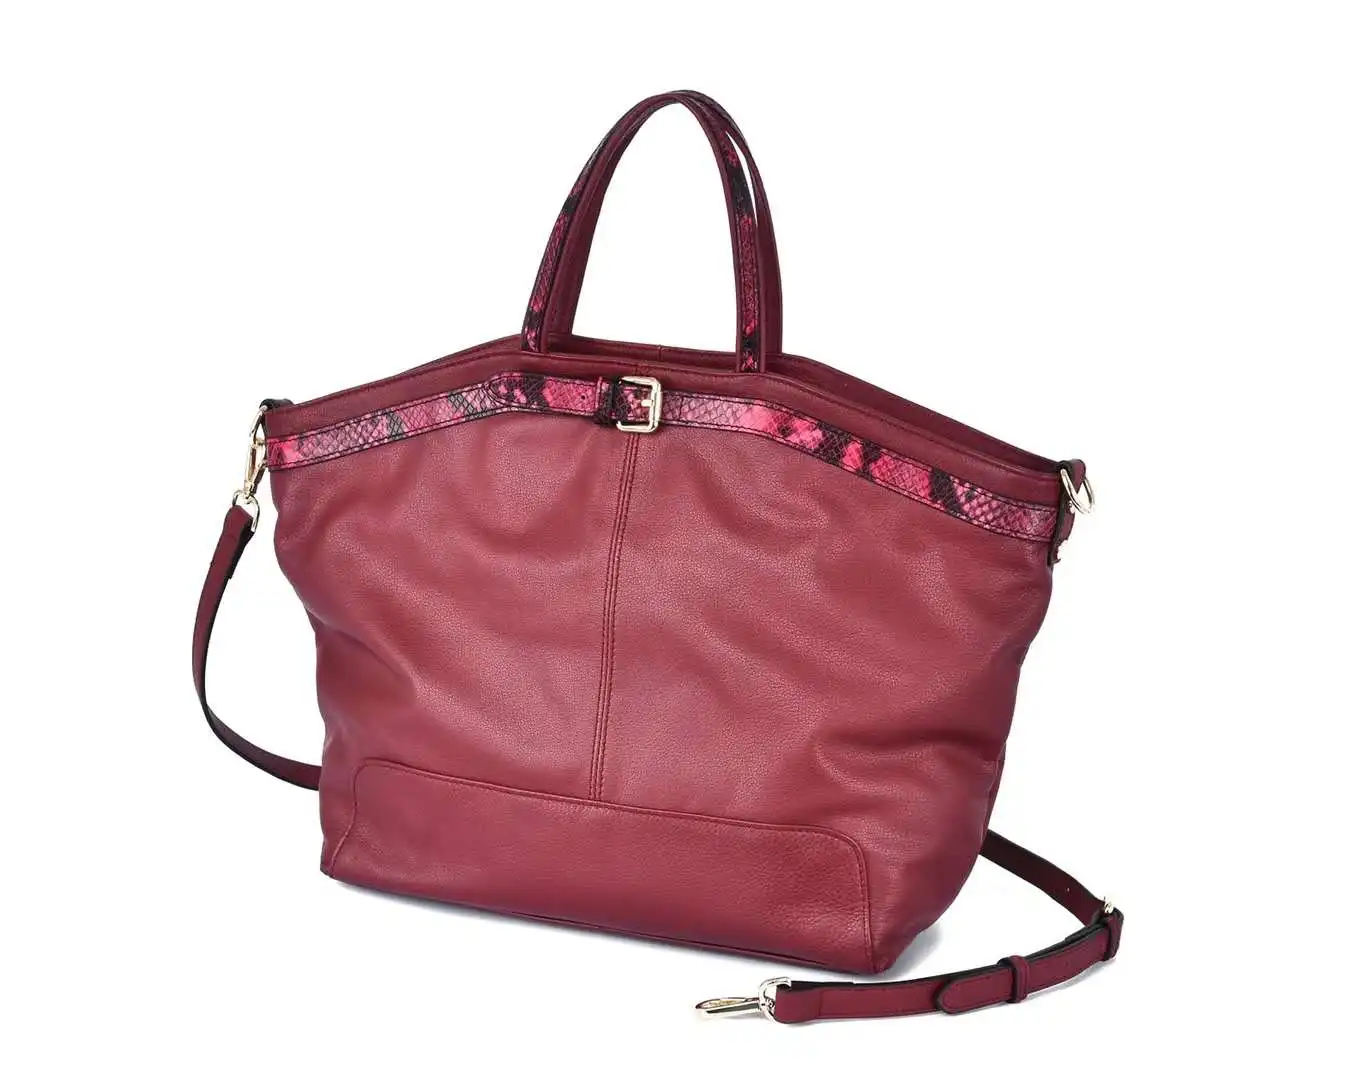 

2020 new fashional ladies fashion designer handbag famous brands tote handbag for women